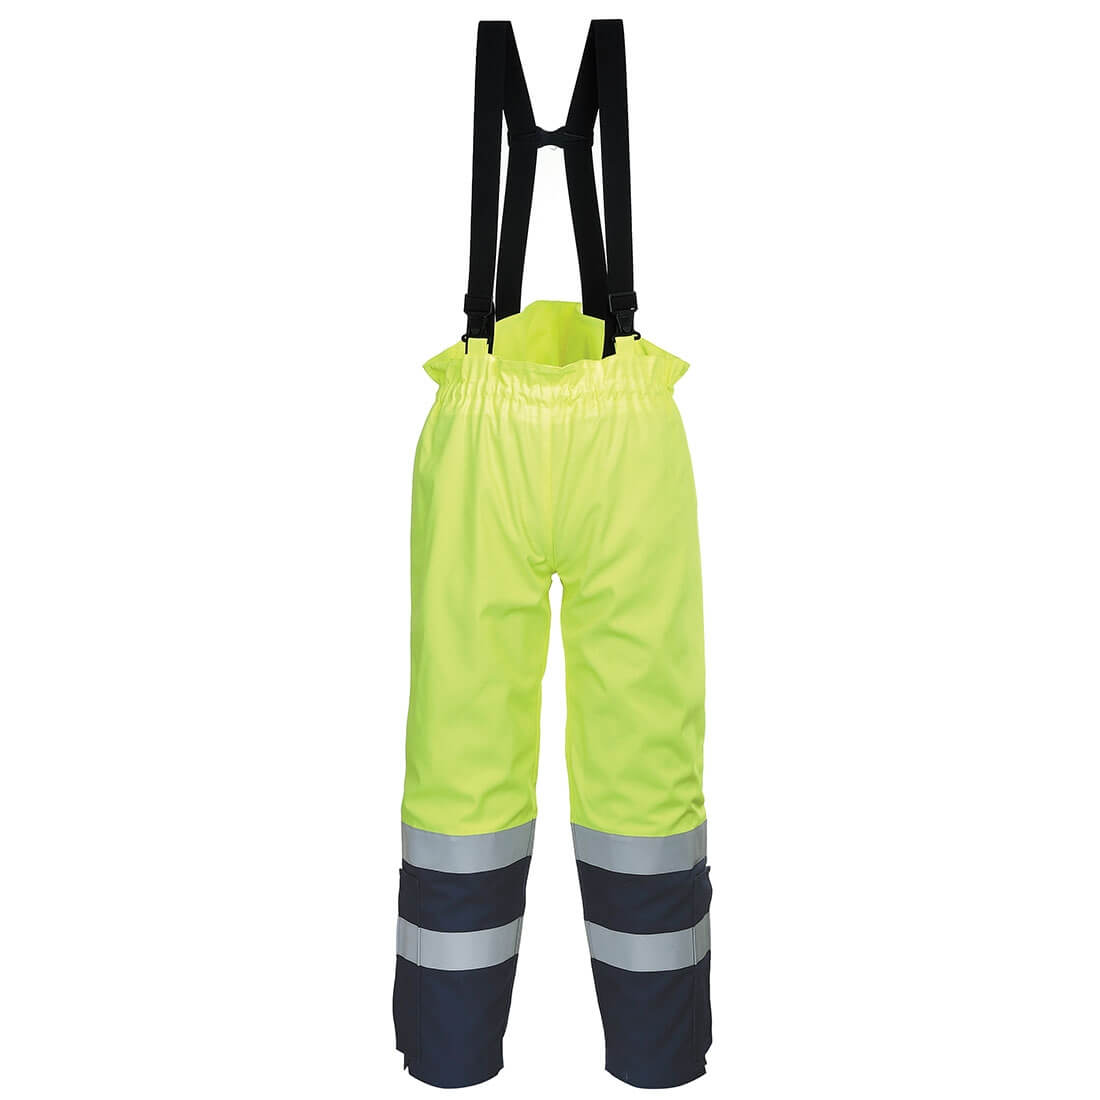 Pantalon bizflame multi normes arc électrique et haute visibilité - Les vêtements de protection